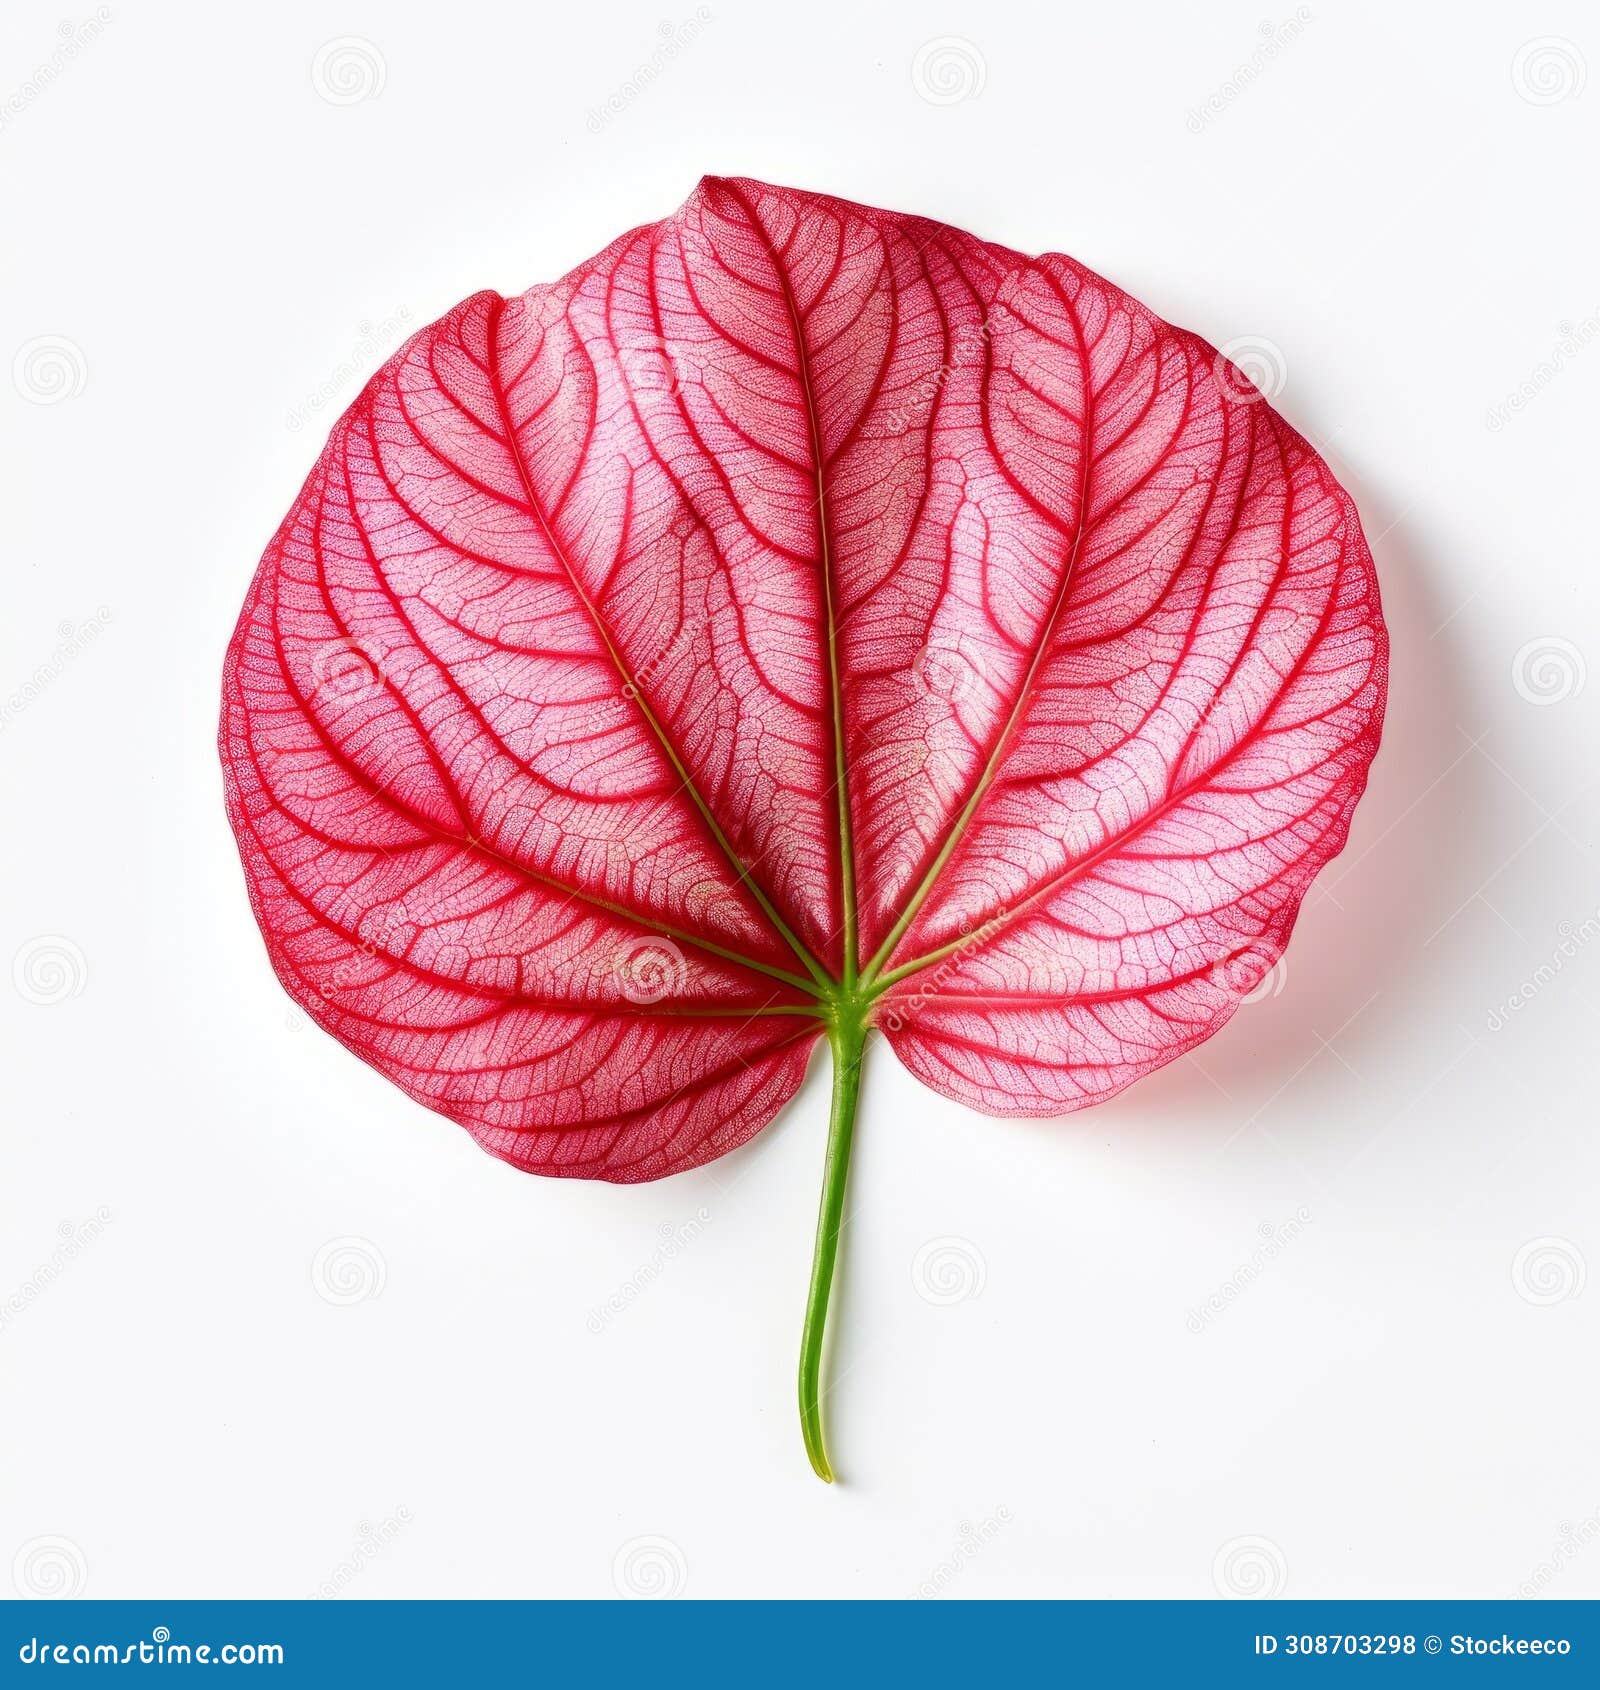 caladium leaf: photorealistic red leaf on white background